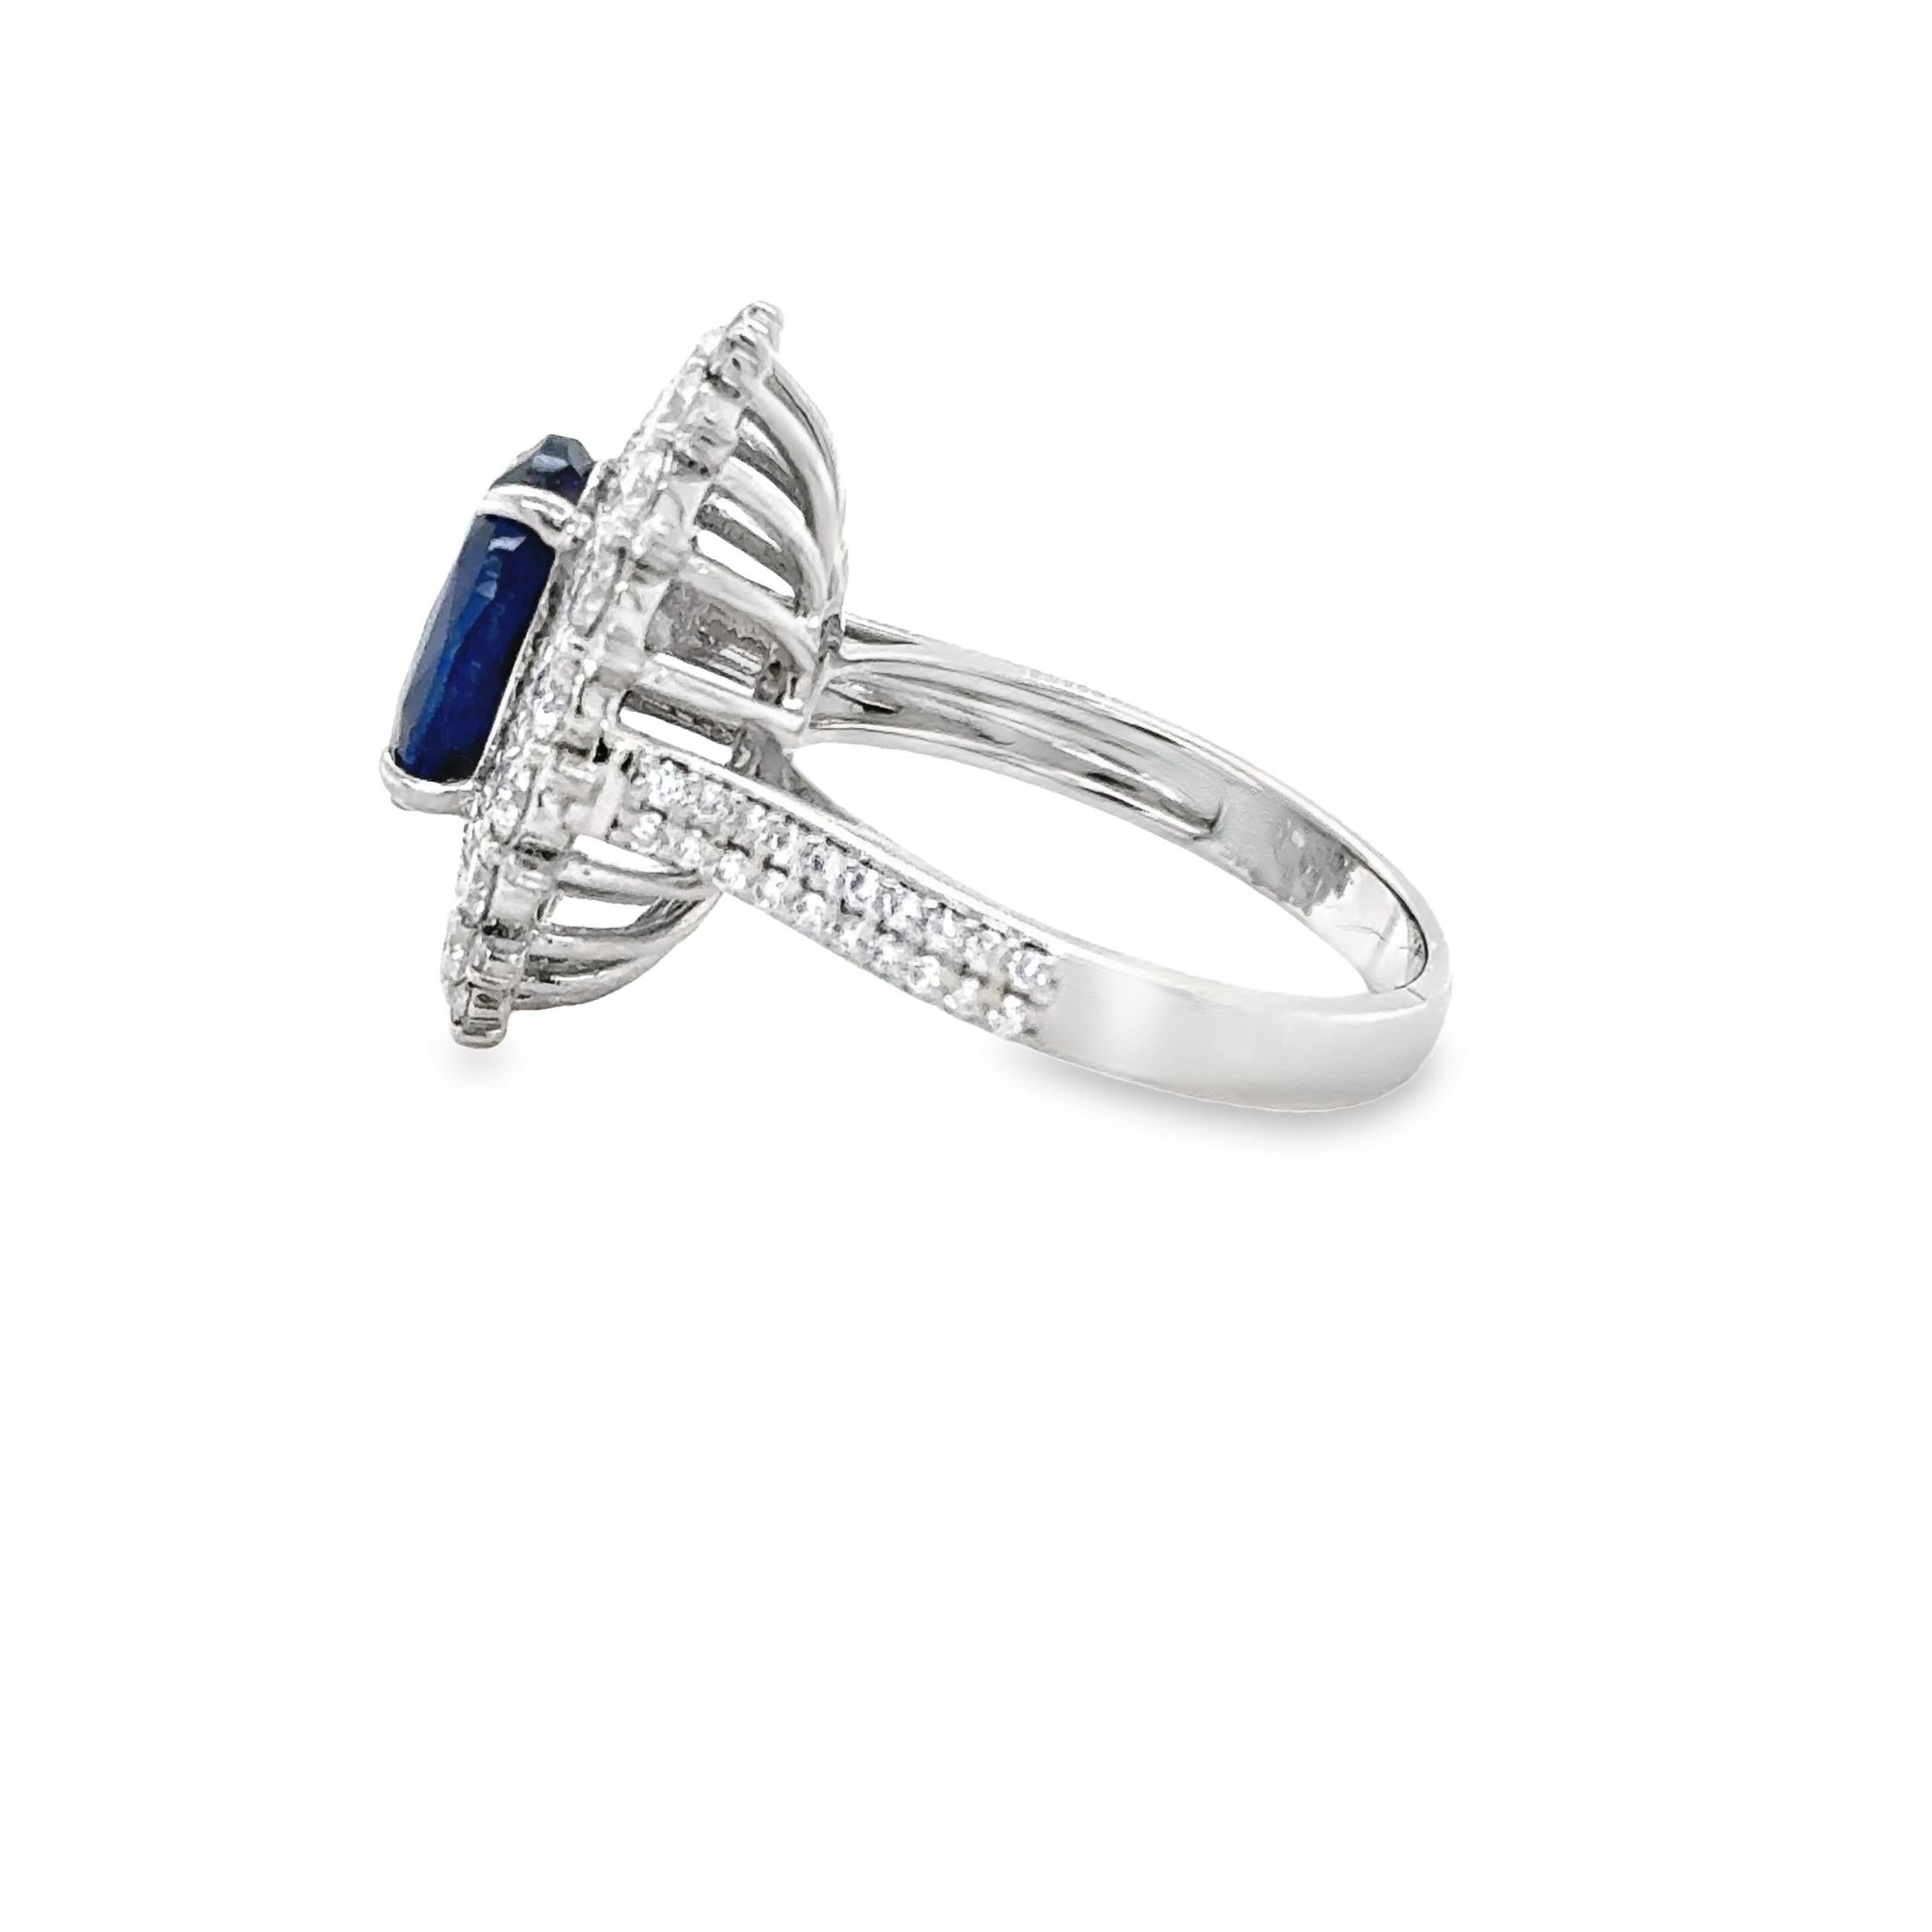 Dieser wunderschöne Saphir-Cluster-Ring ist mit einem königsblauen, ovalen Saphir mit einem Gewicht von 3,95ct besetzt. 
Der Edelstein ist perfekt in der Mitte eines wunderschönen Clusters aus über 100 runden Diamanten mit einem Gesamtgewicht von